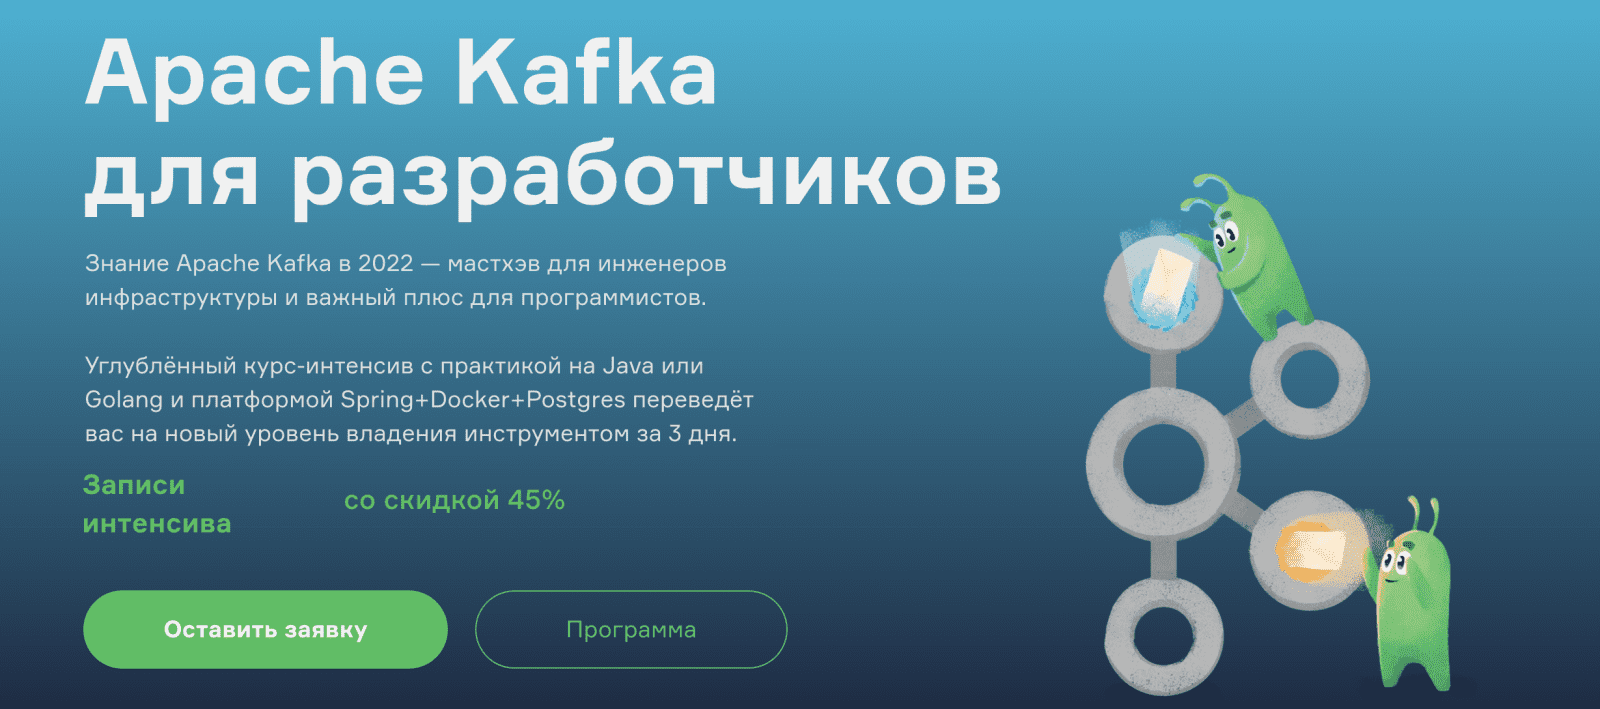 Изображение [Slurm] В. Севостьянов, А. Бурылов - Apache Kafka для разработчиков (2022) в посте 269472